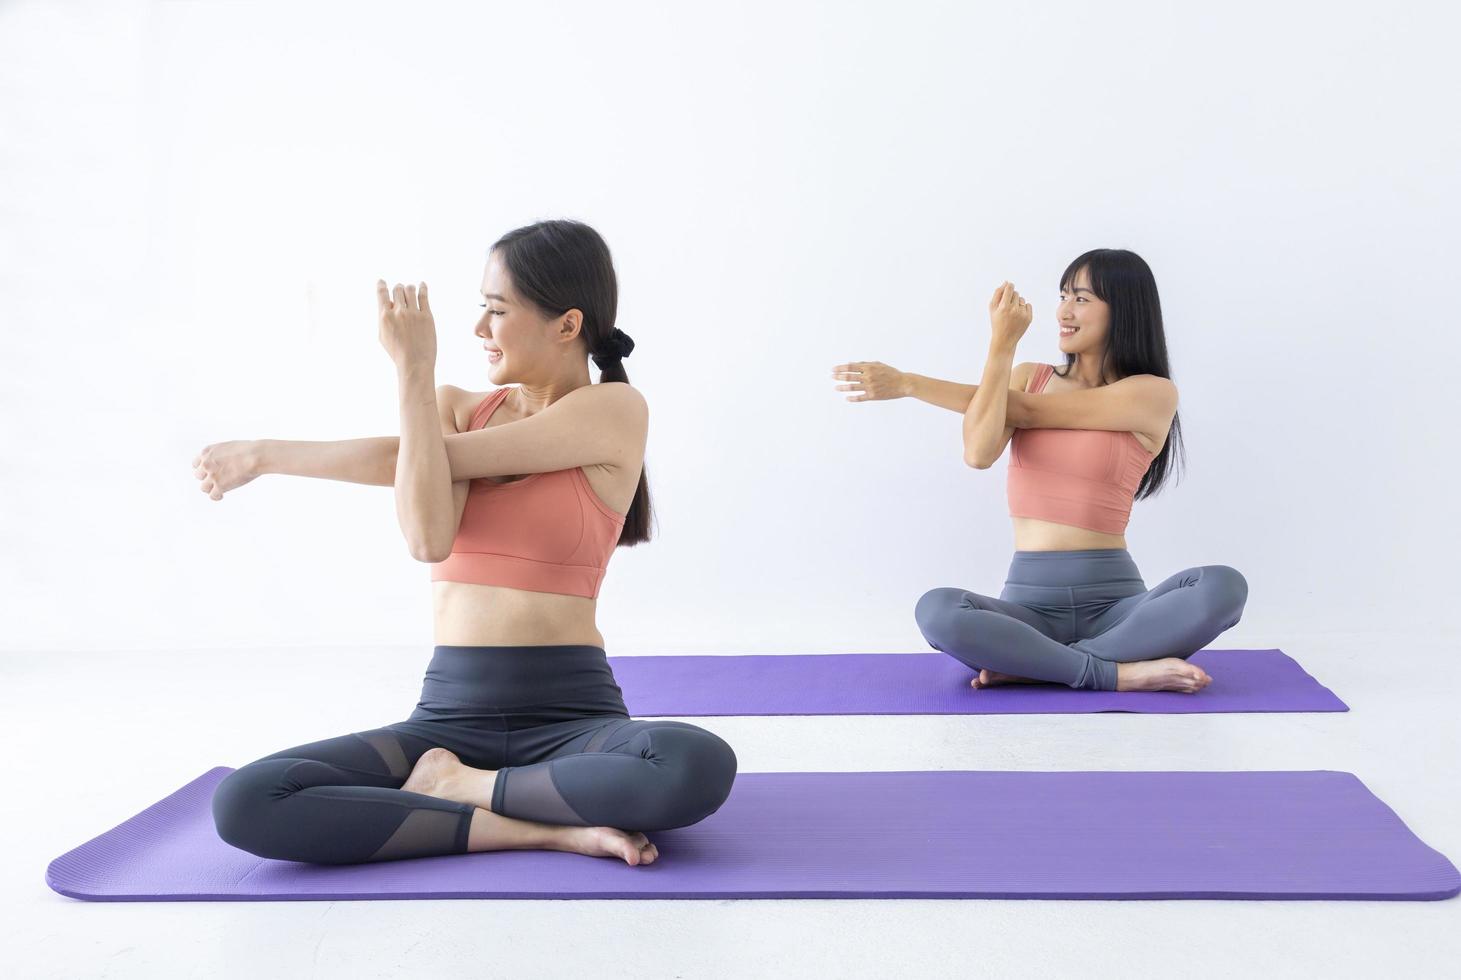 mulher asiática praticando ioga indoor com posição fácil e simples para controlar a inspiração e expiração na postura de alongamento do braço foto